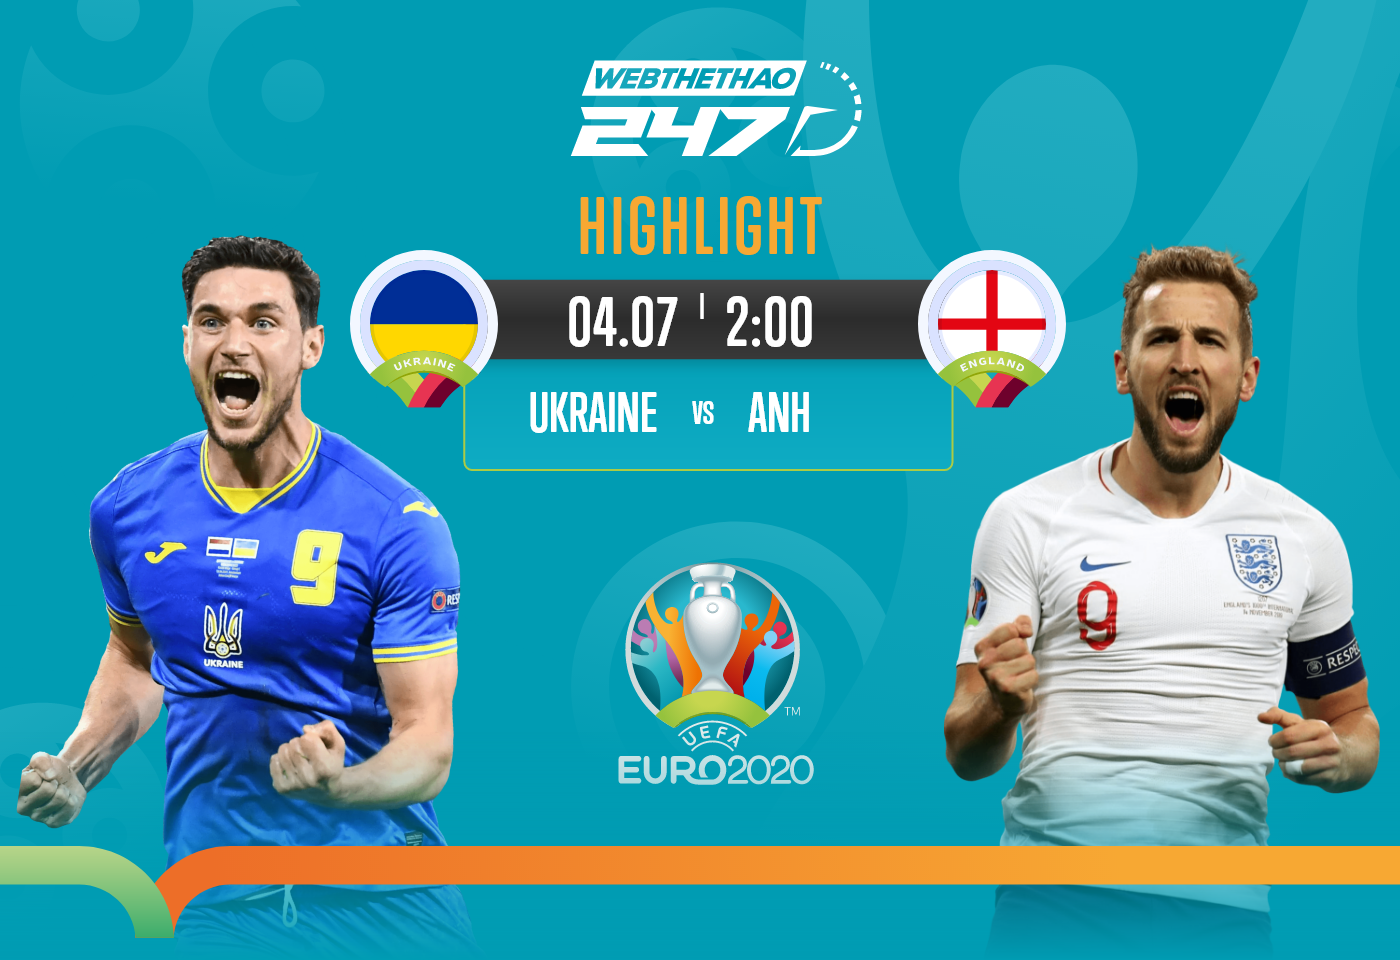 Highlight Ukraine vs Anh